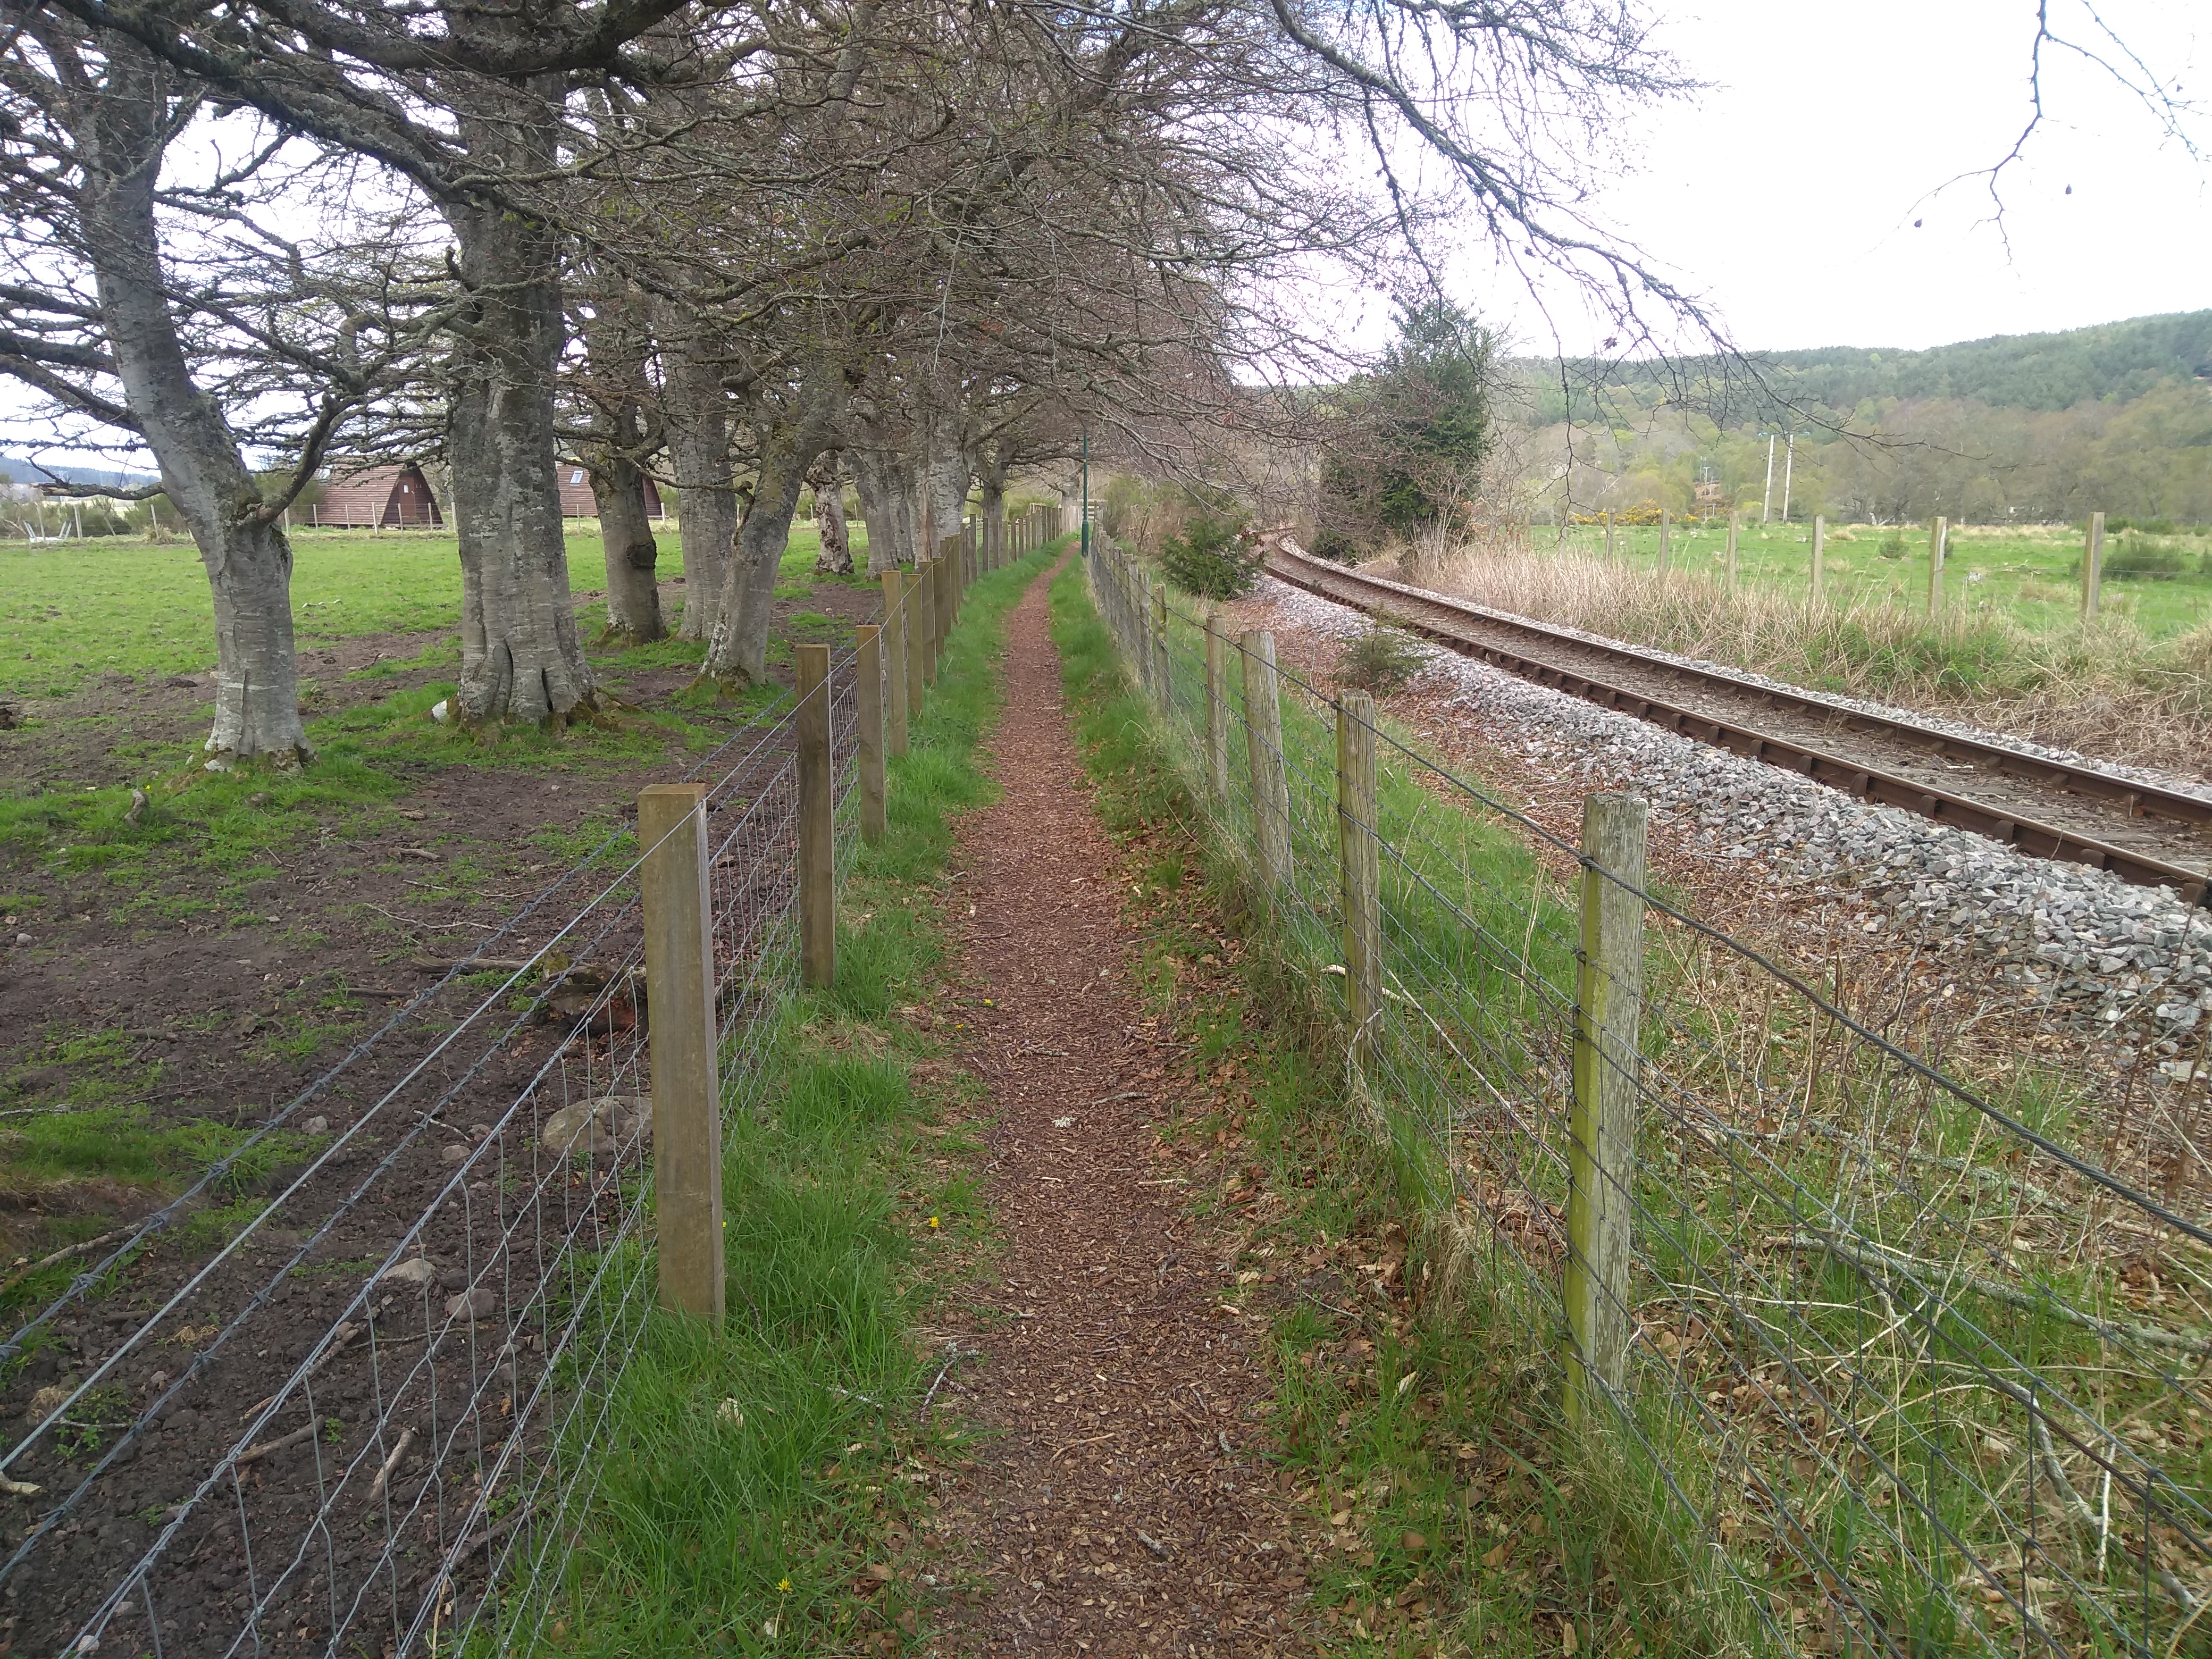 Narrow path by railway